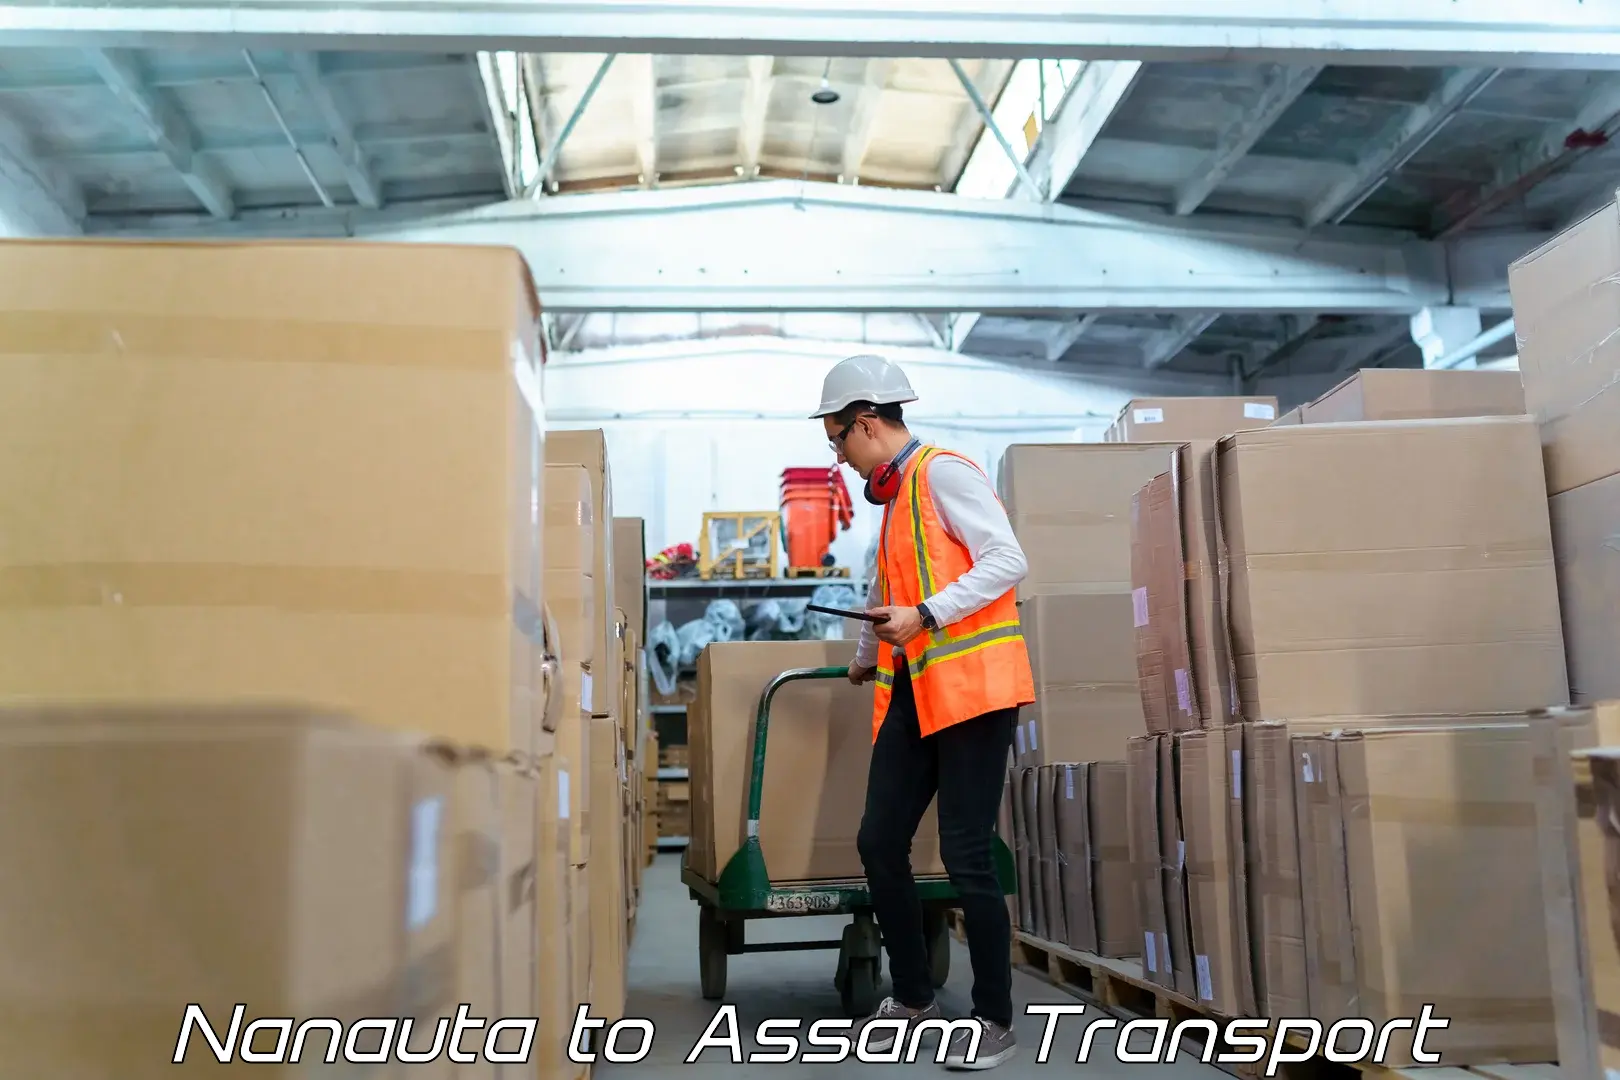 Cargo transport services Nanauta to Assam